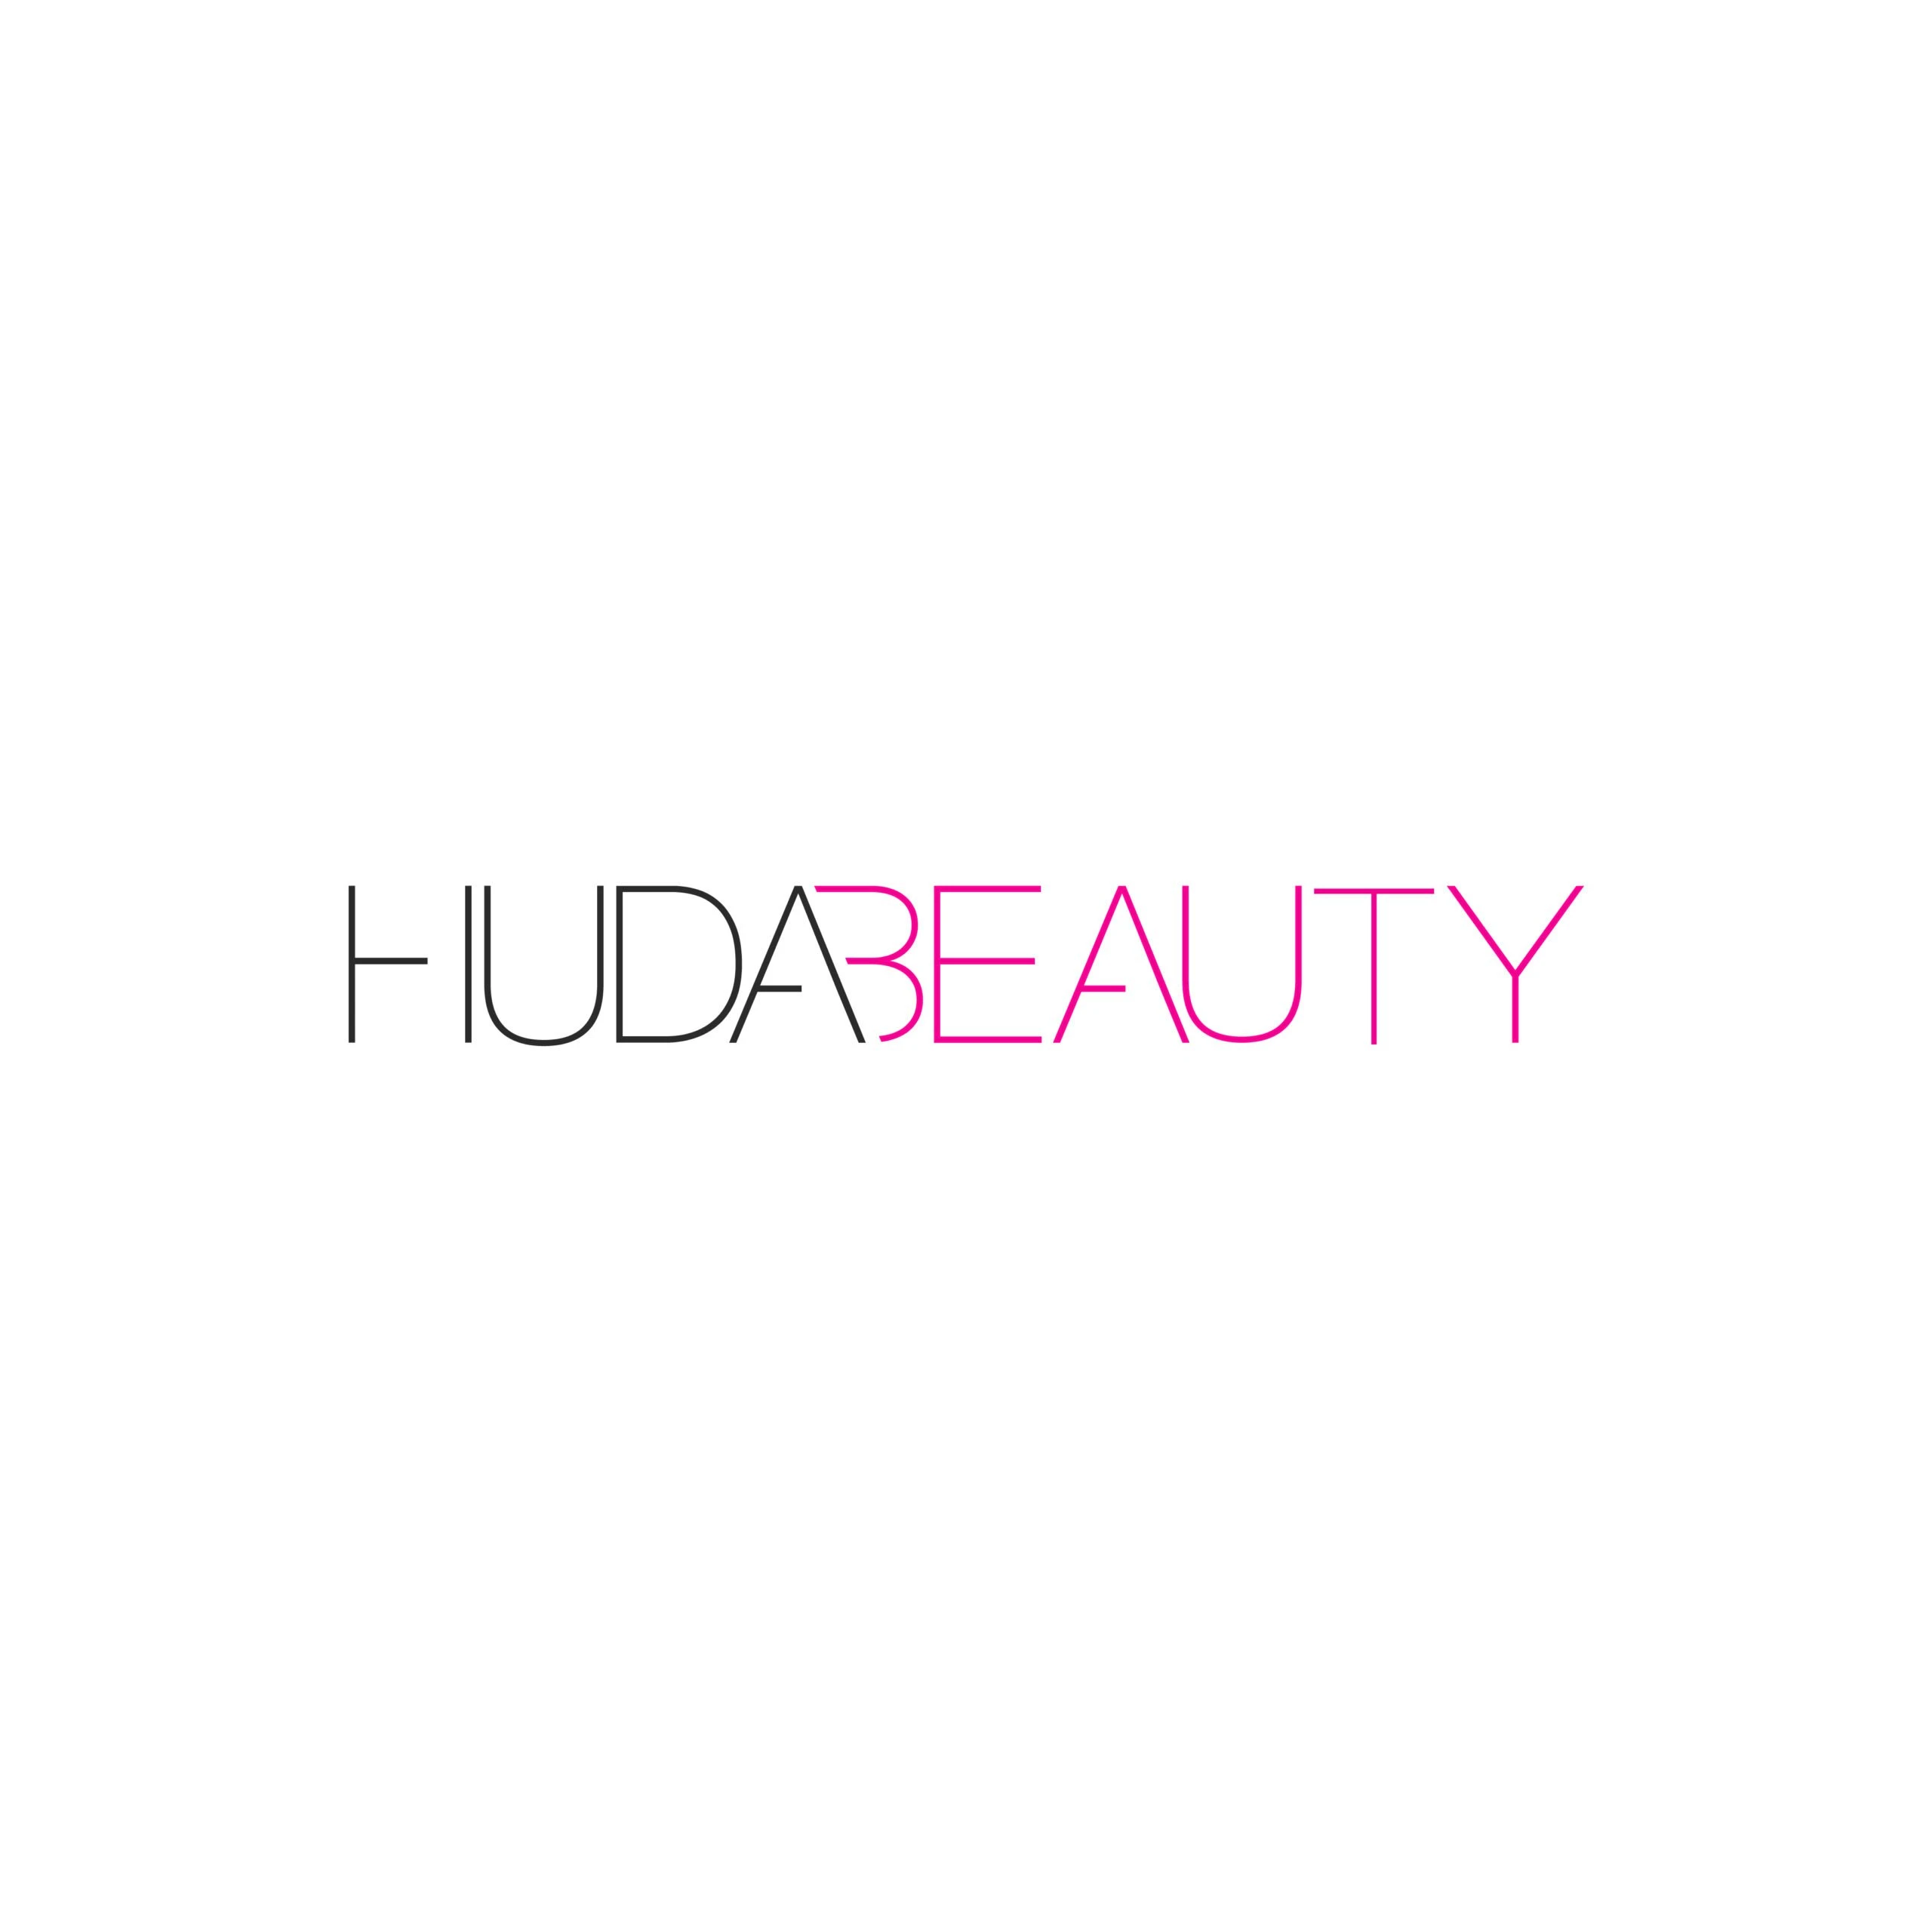 Huda Beauty